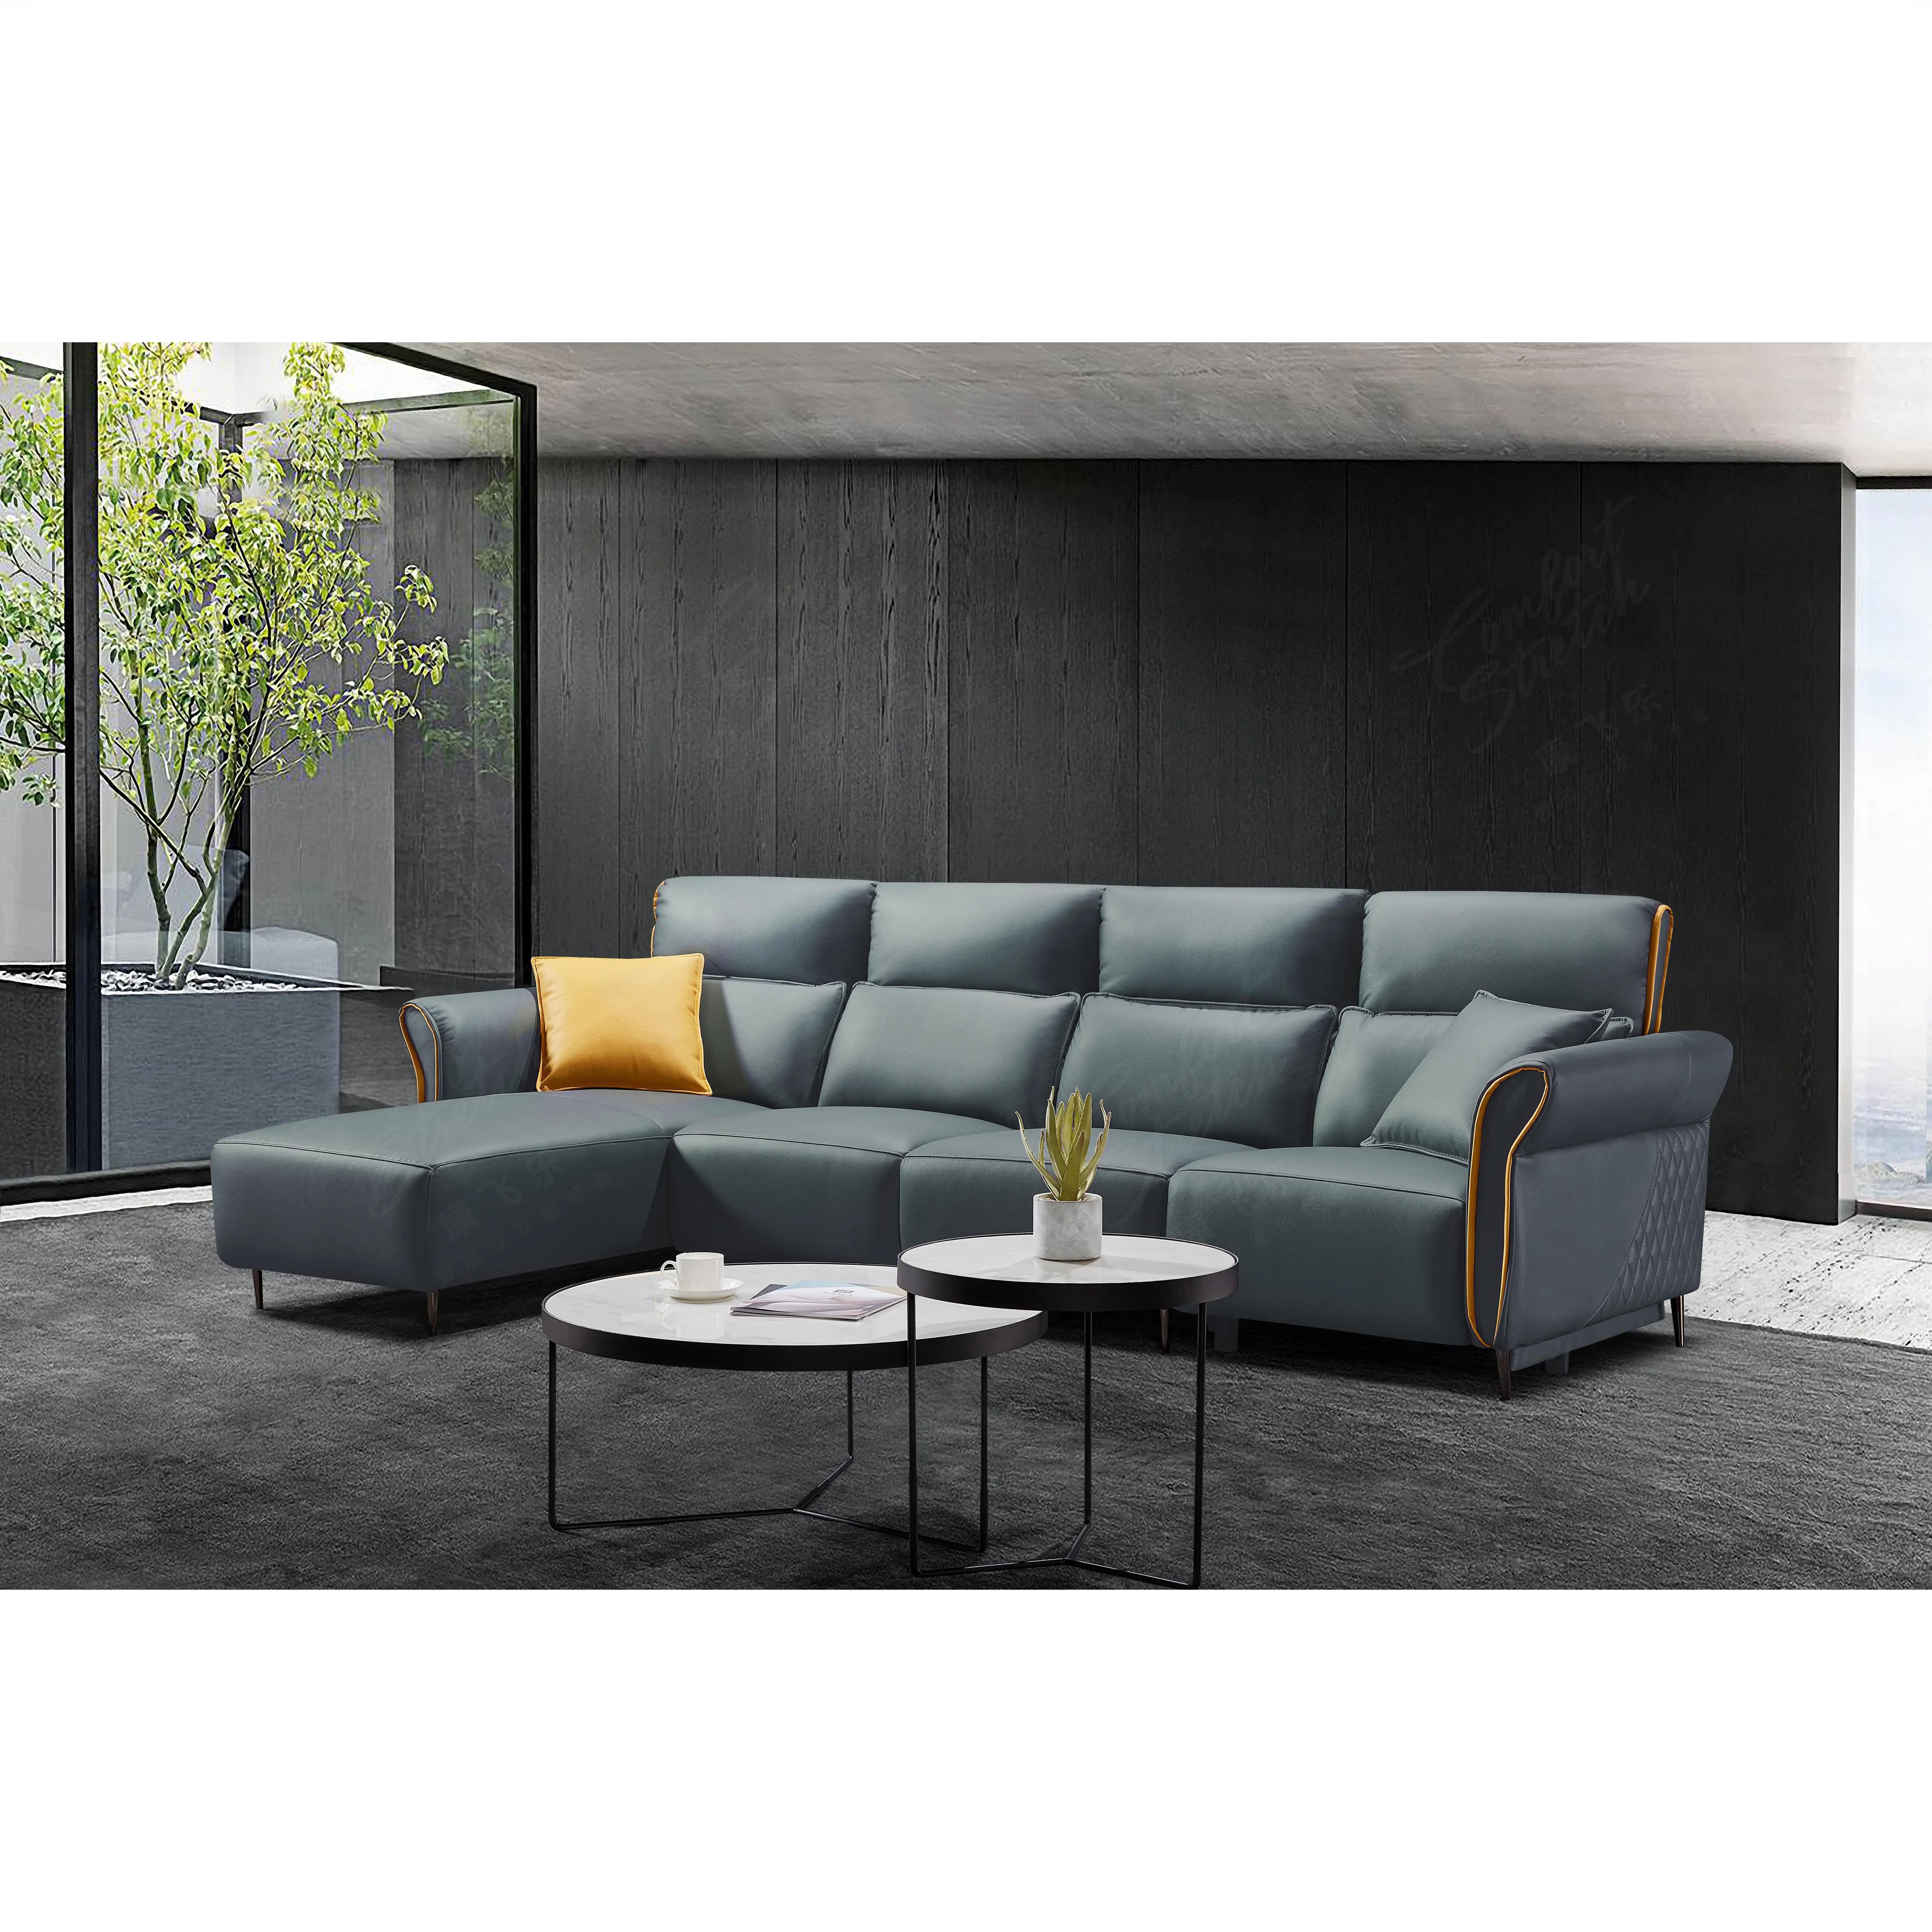 Meubles de maison intelligente design italien canapé en cuir bleu ensemble de canapé inclinable canapés modernes de salon avec deux coussins